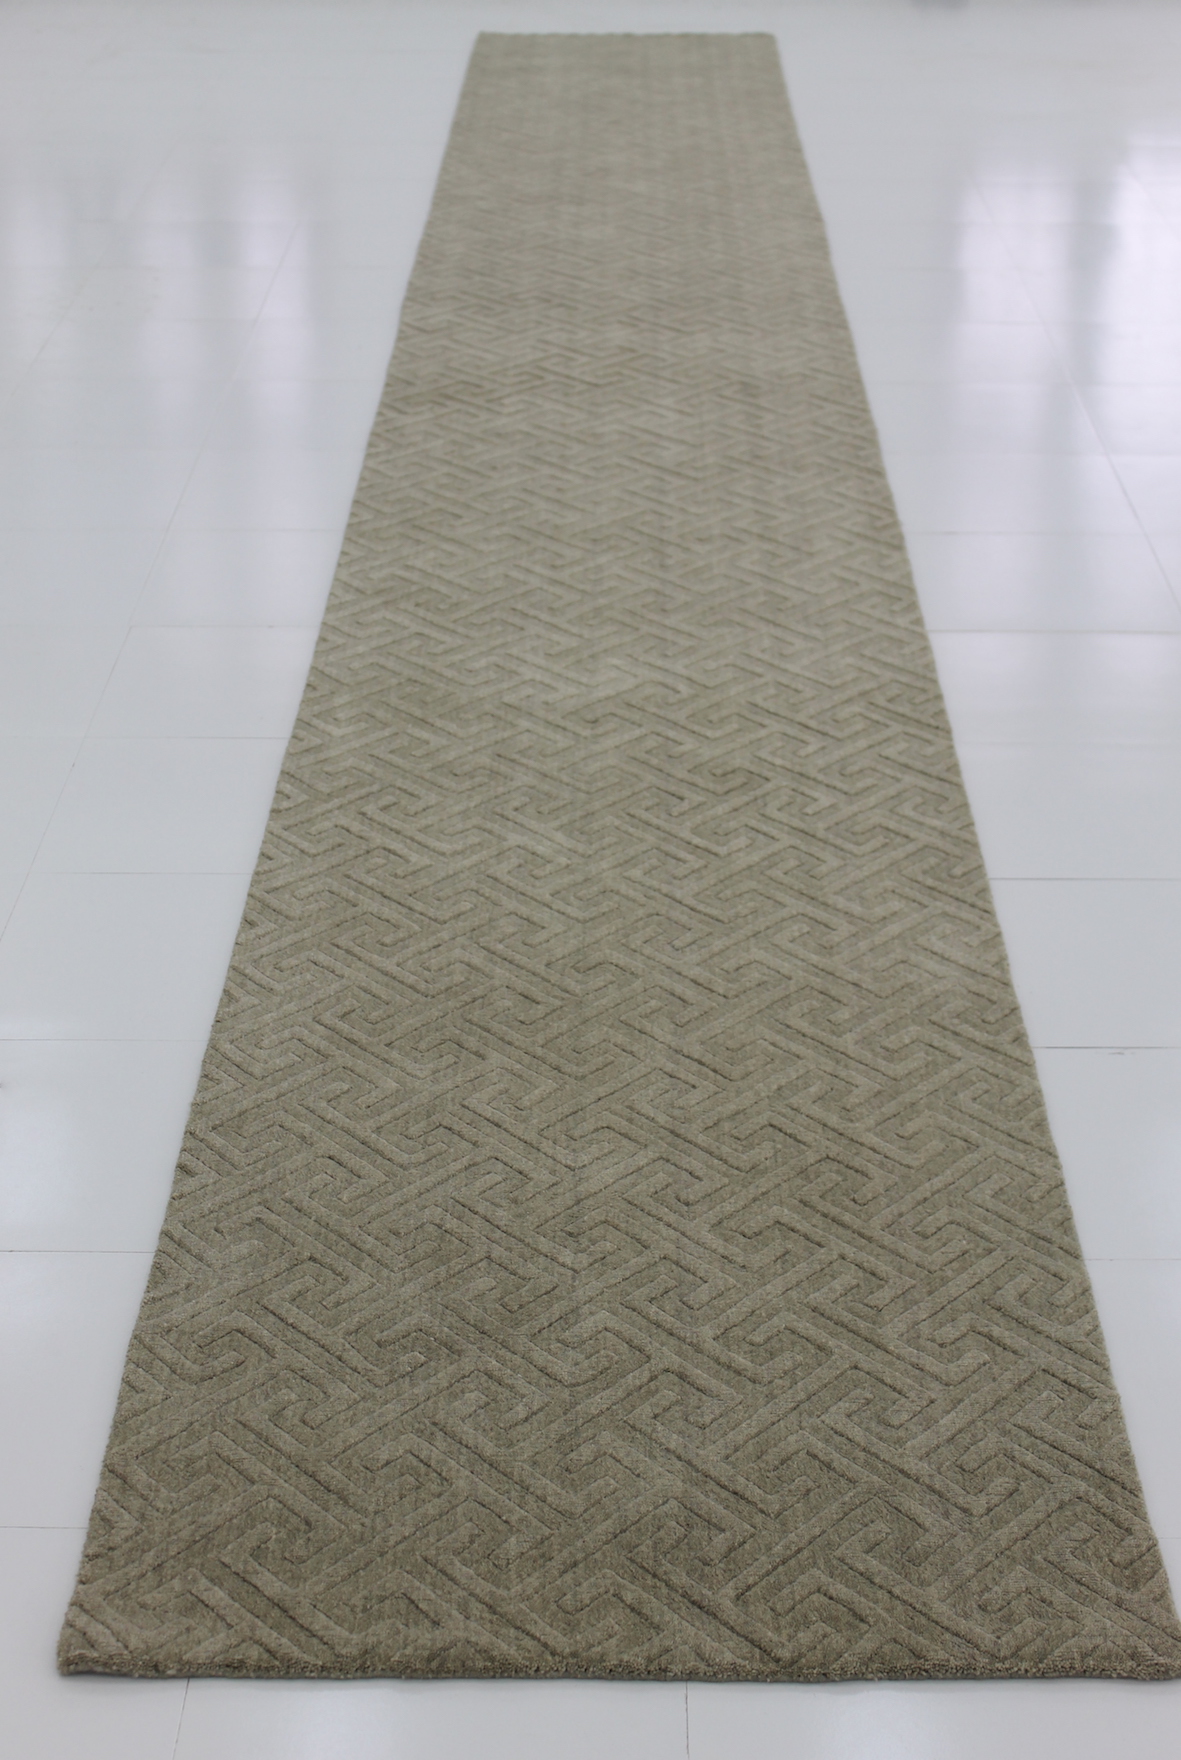 Carved hall runner rug